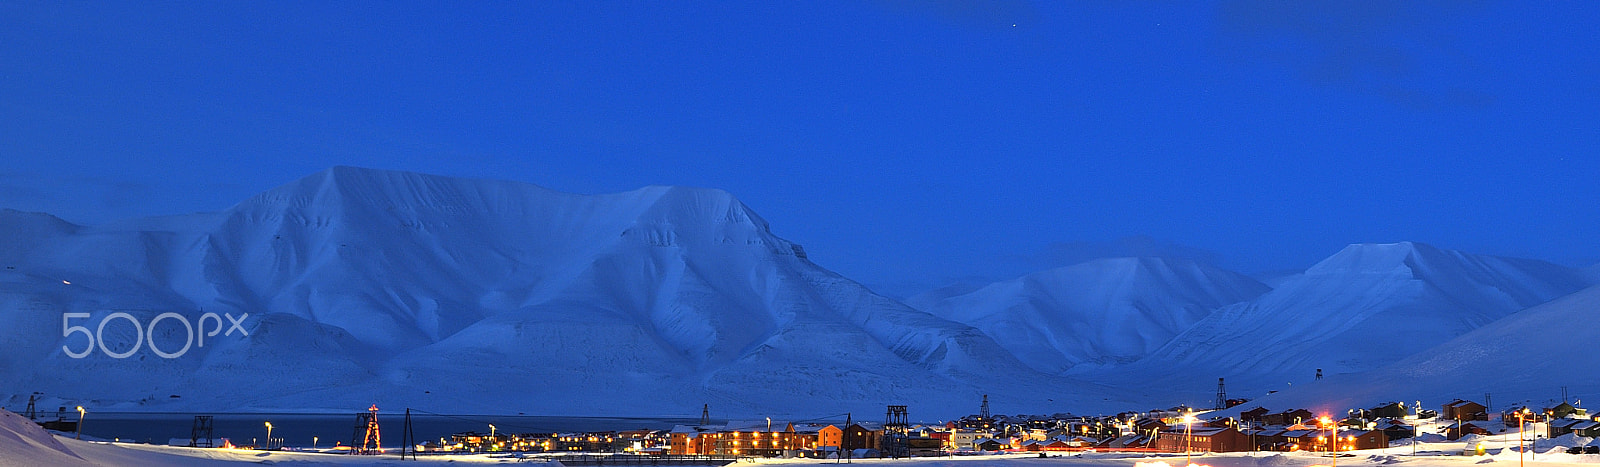 Nikon D800 sample photo. Arctic town photography